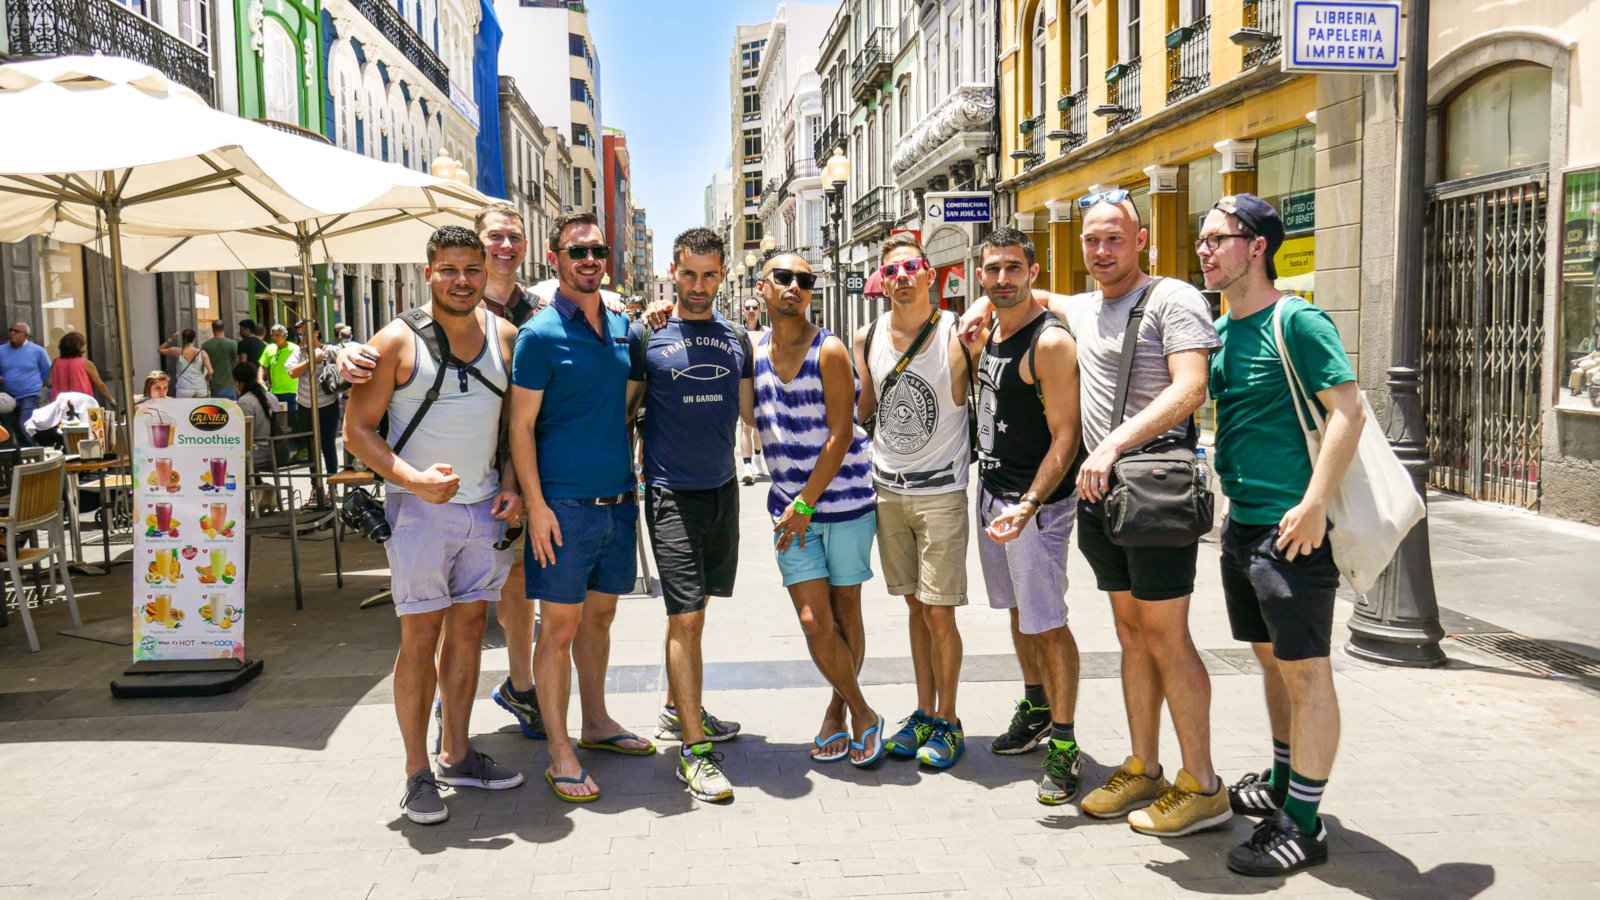 Conectar-se com locais LGBTQ é uma excelente dica para casais gays que viajam